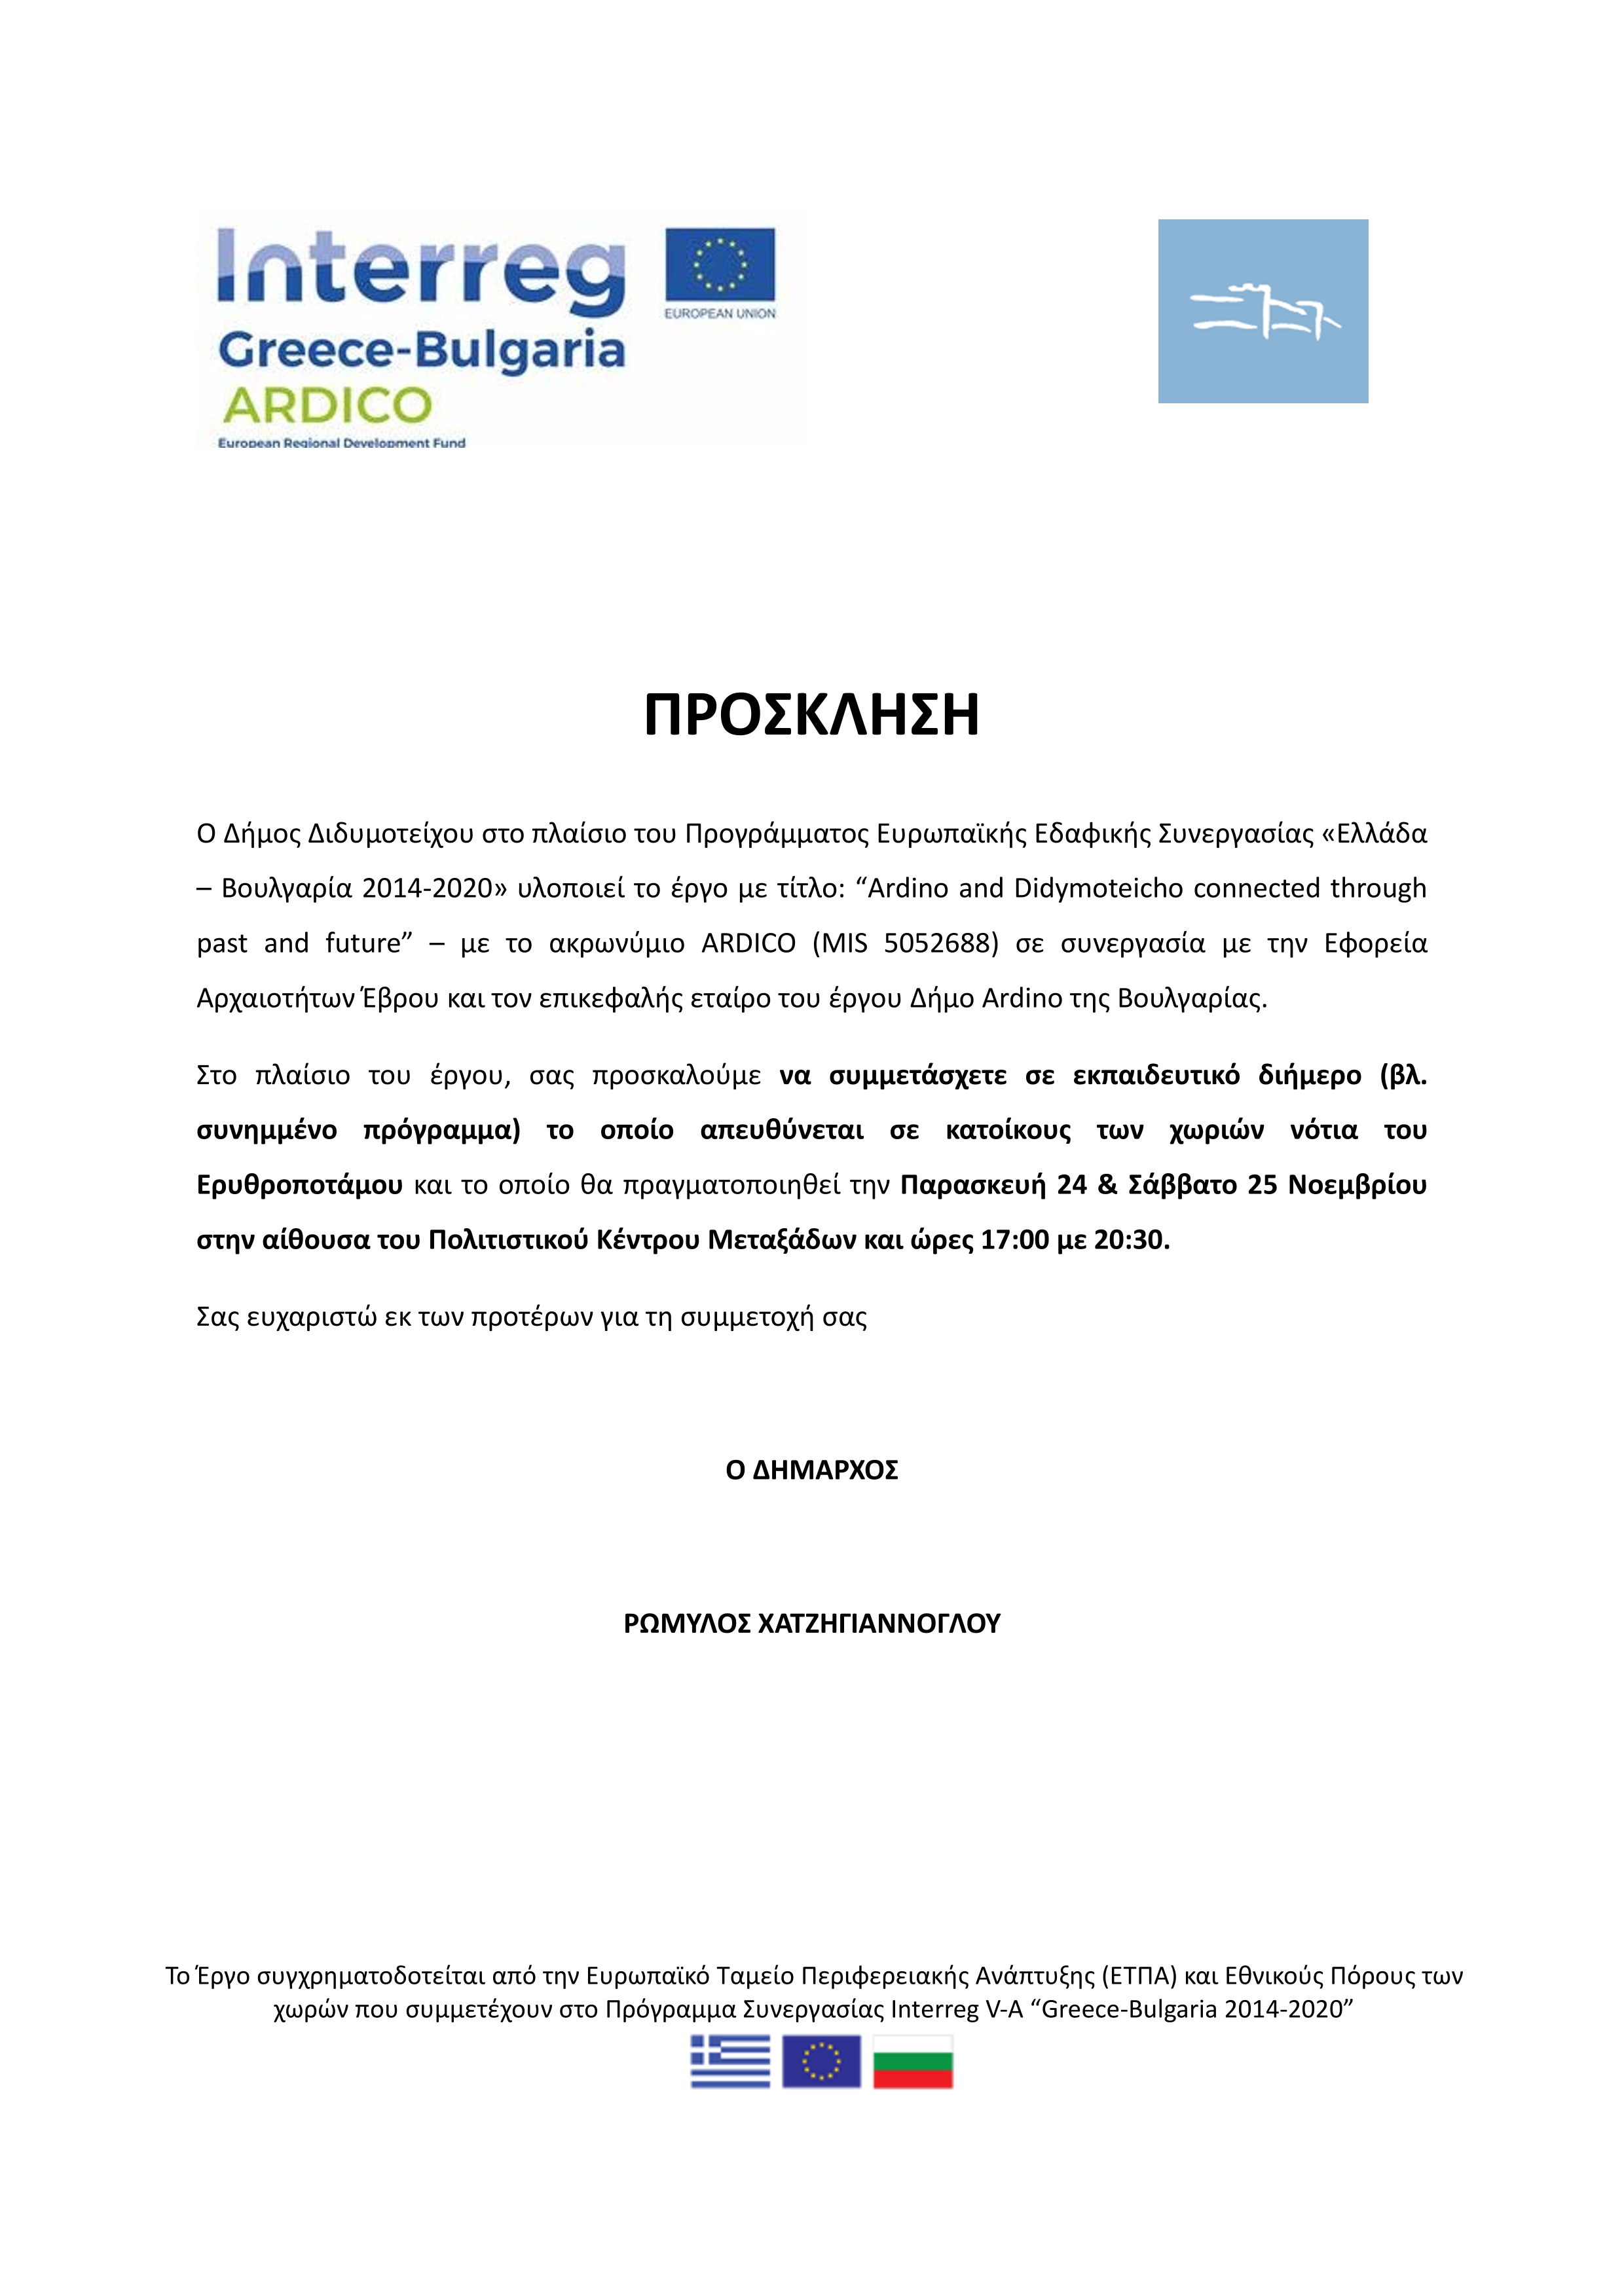 «Ελλάδα – Βουλγαρία 2014-2020» - Εκπαιδευτικό διήμερο (βλ. συνημμένο πρόγραμμα) το οποίο απευθύνεται σε κατοίκους των χωριών νότια του Ερυθροποτάμου